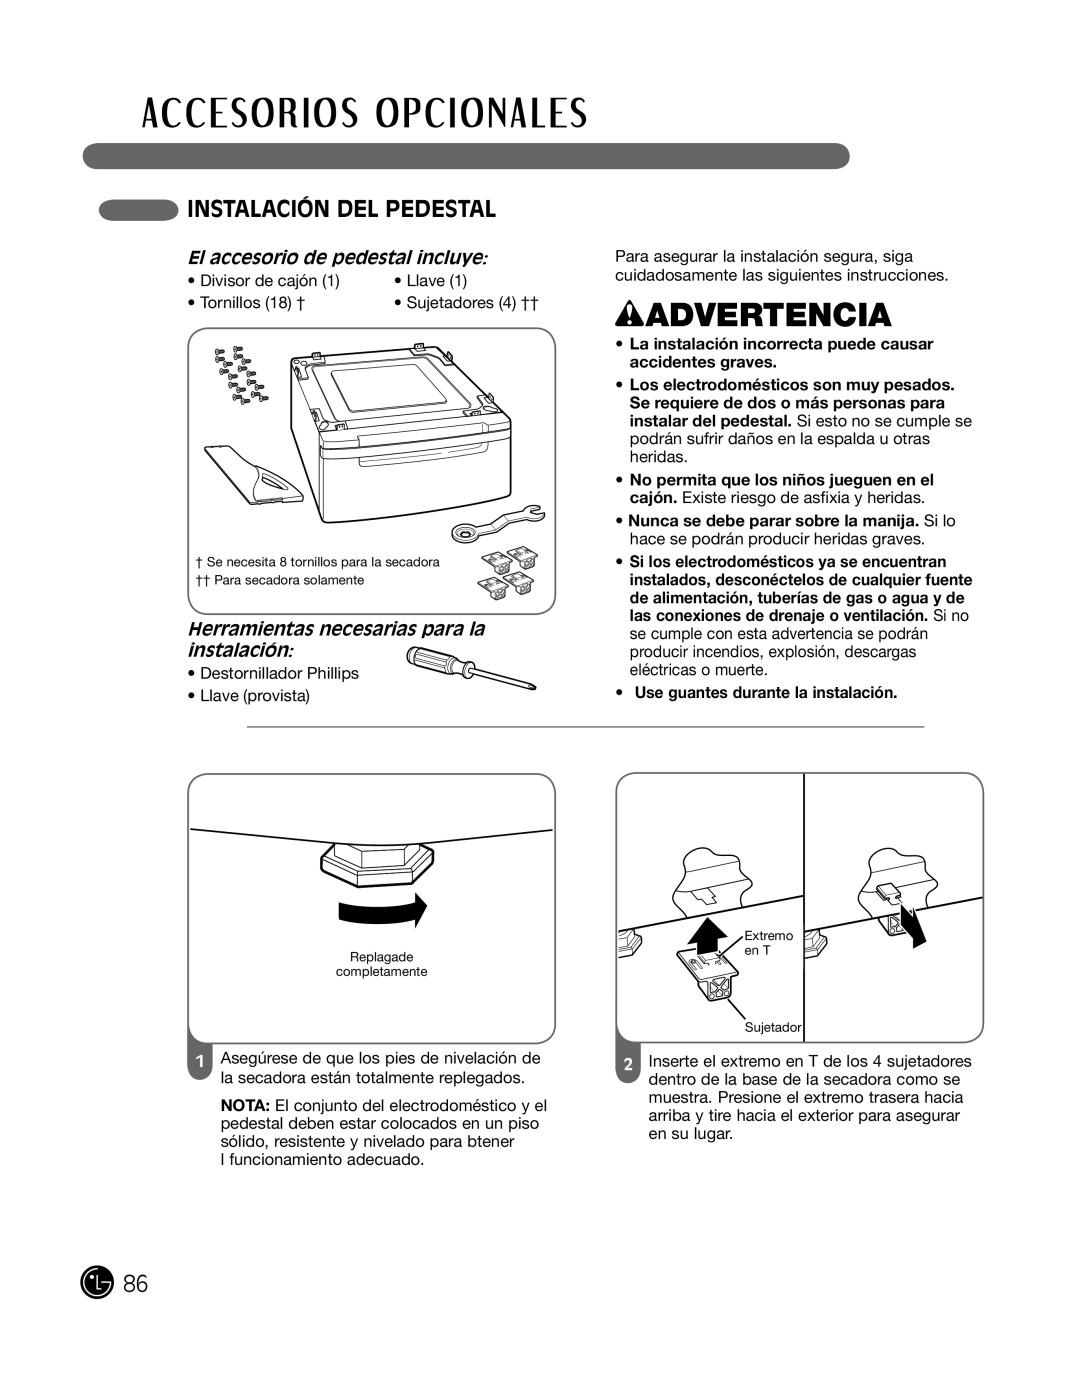 LG Electronics P154 manual inSTalaciÓn del PedeSTal, el accesorio de pedestal incluye, wADVERTENCIA 